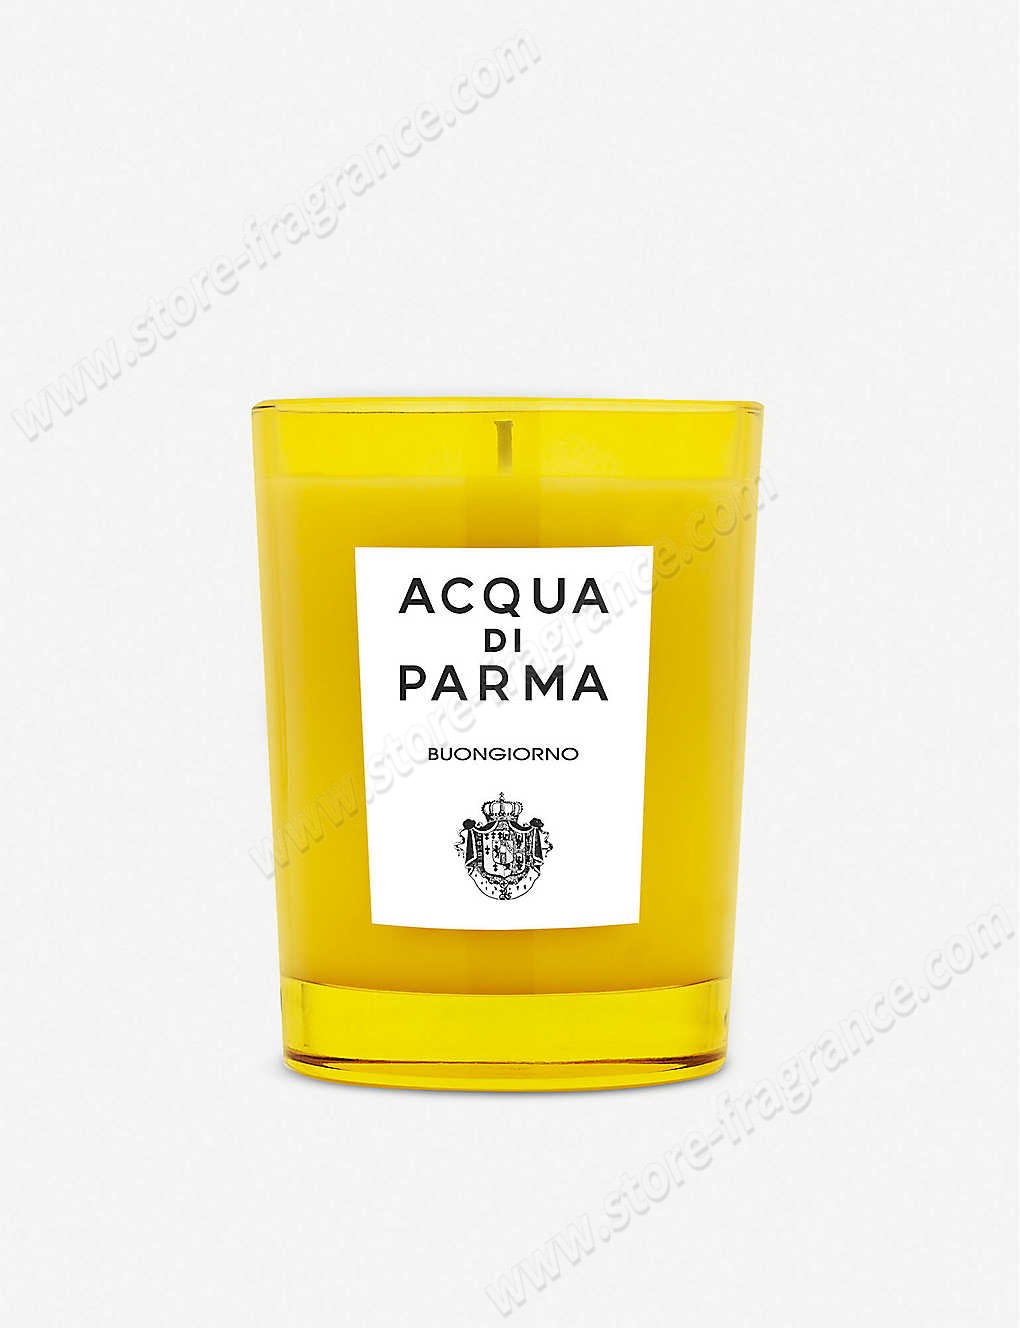 ACQUA DI PARMA/Buongiorno candle 200g ✿ Discount Store - -0